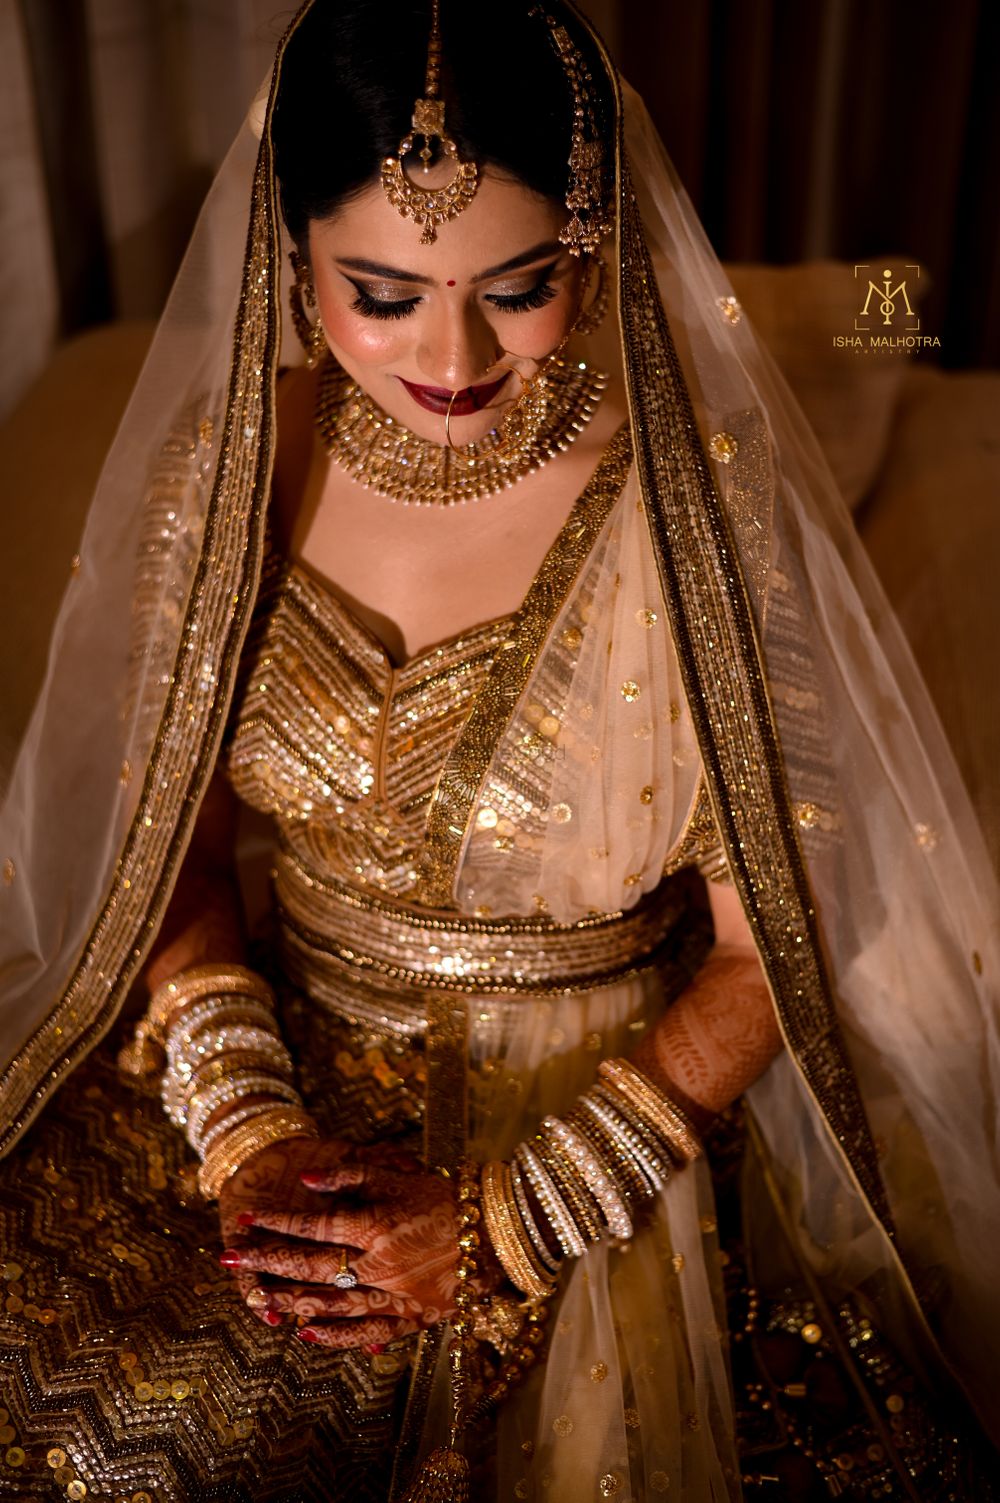 Photo From Bridal looks by Isha Malhotra  - By Isha Malhotra Artistry 